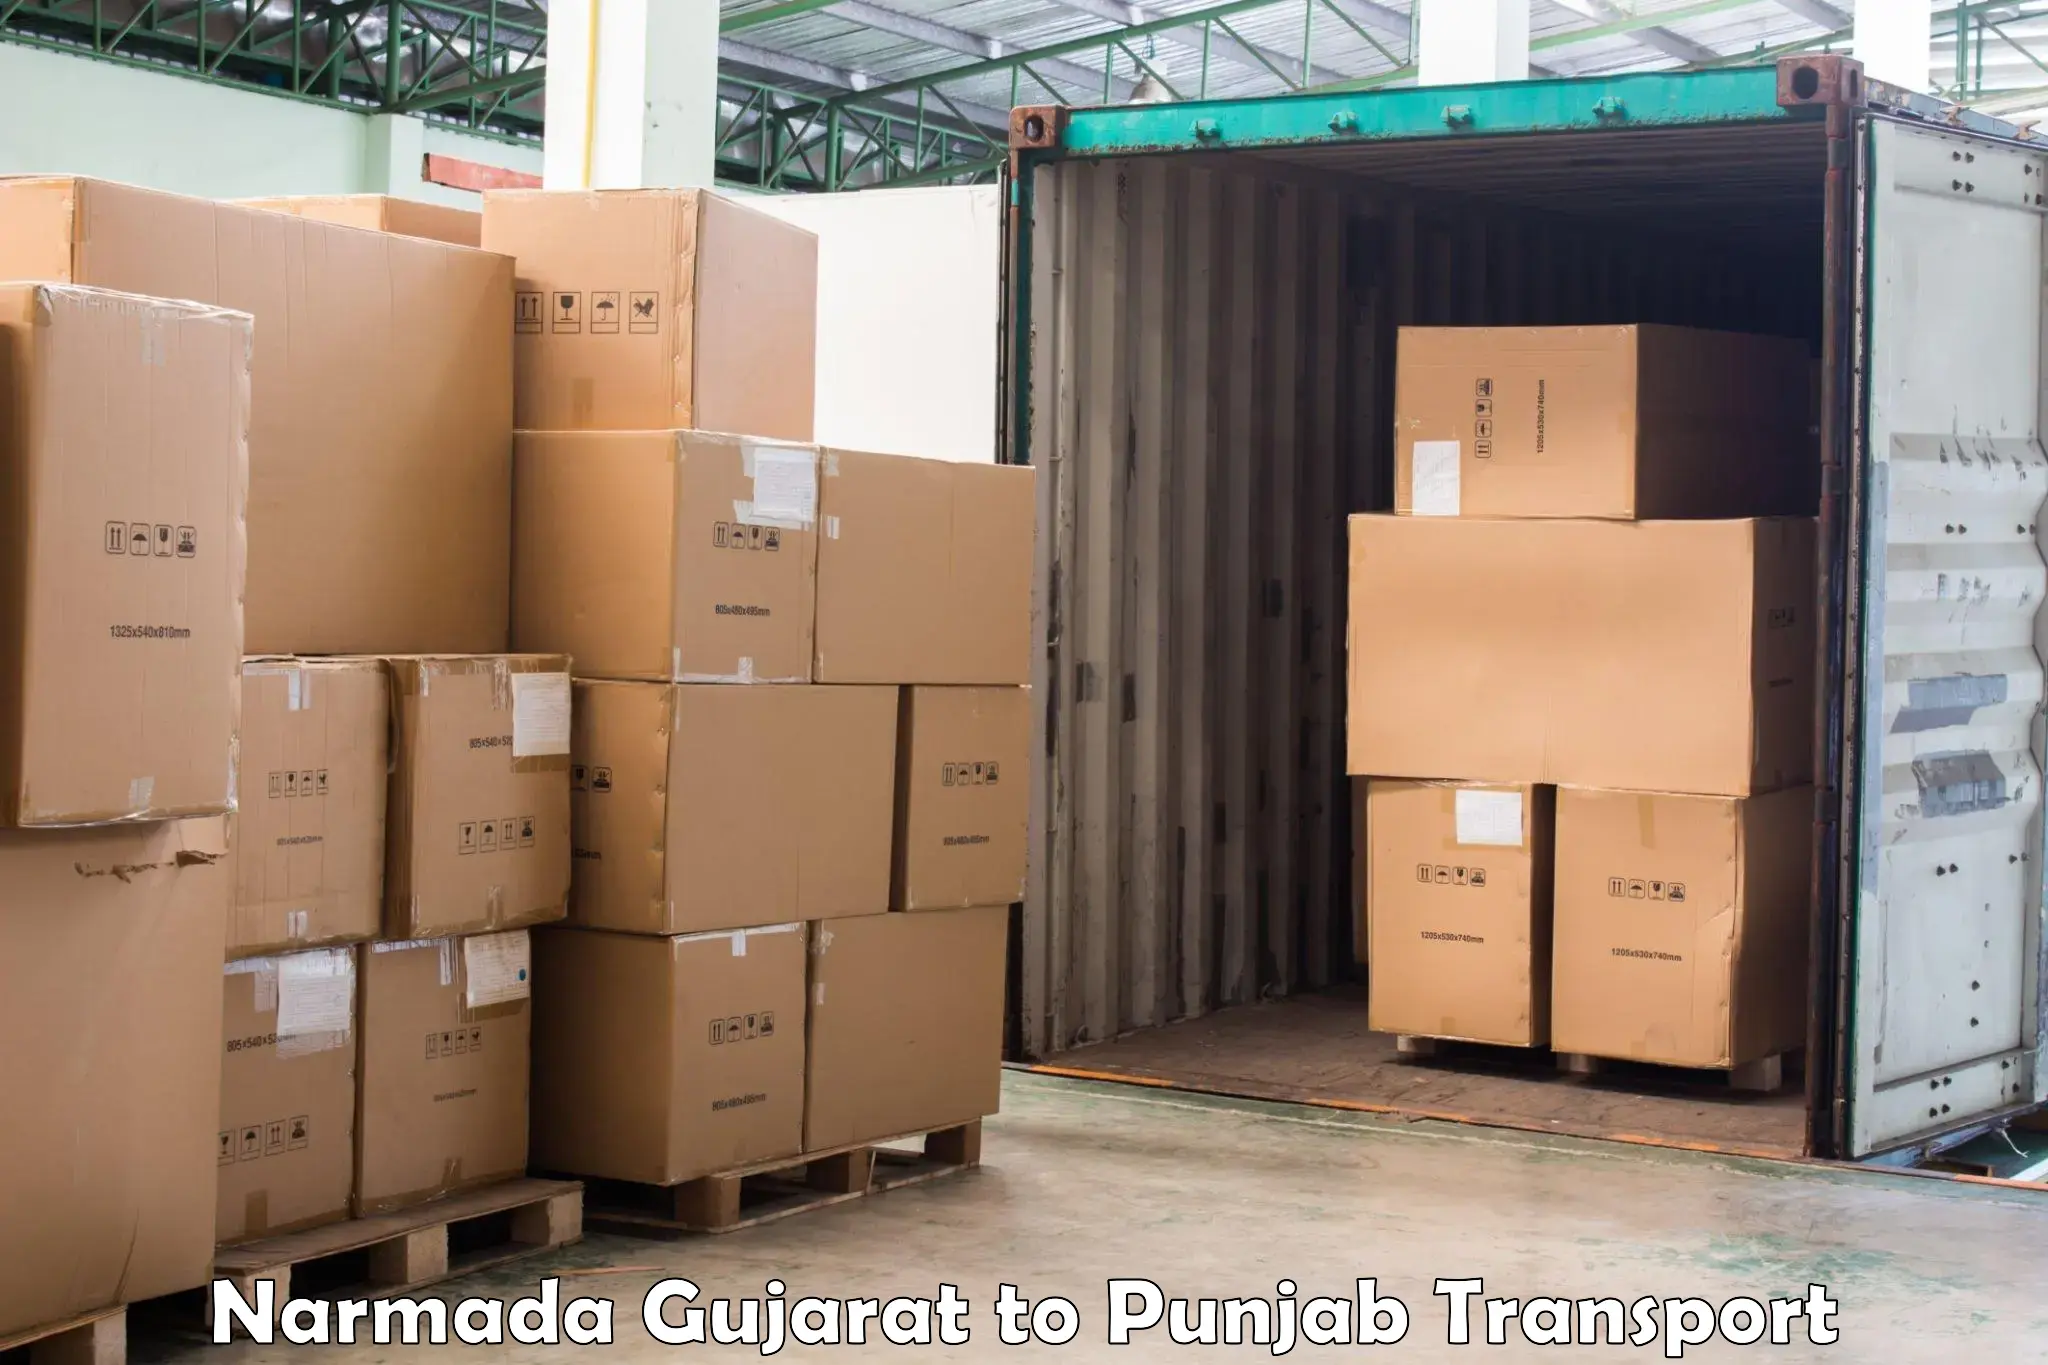 Sending bike to another city Narmada Gujarat to Adampur Jalandhar